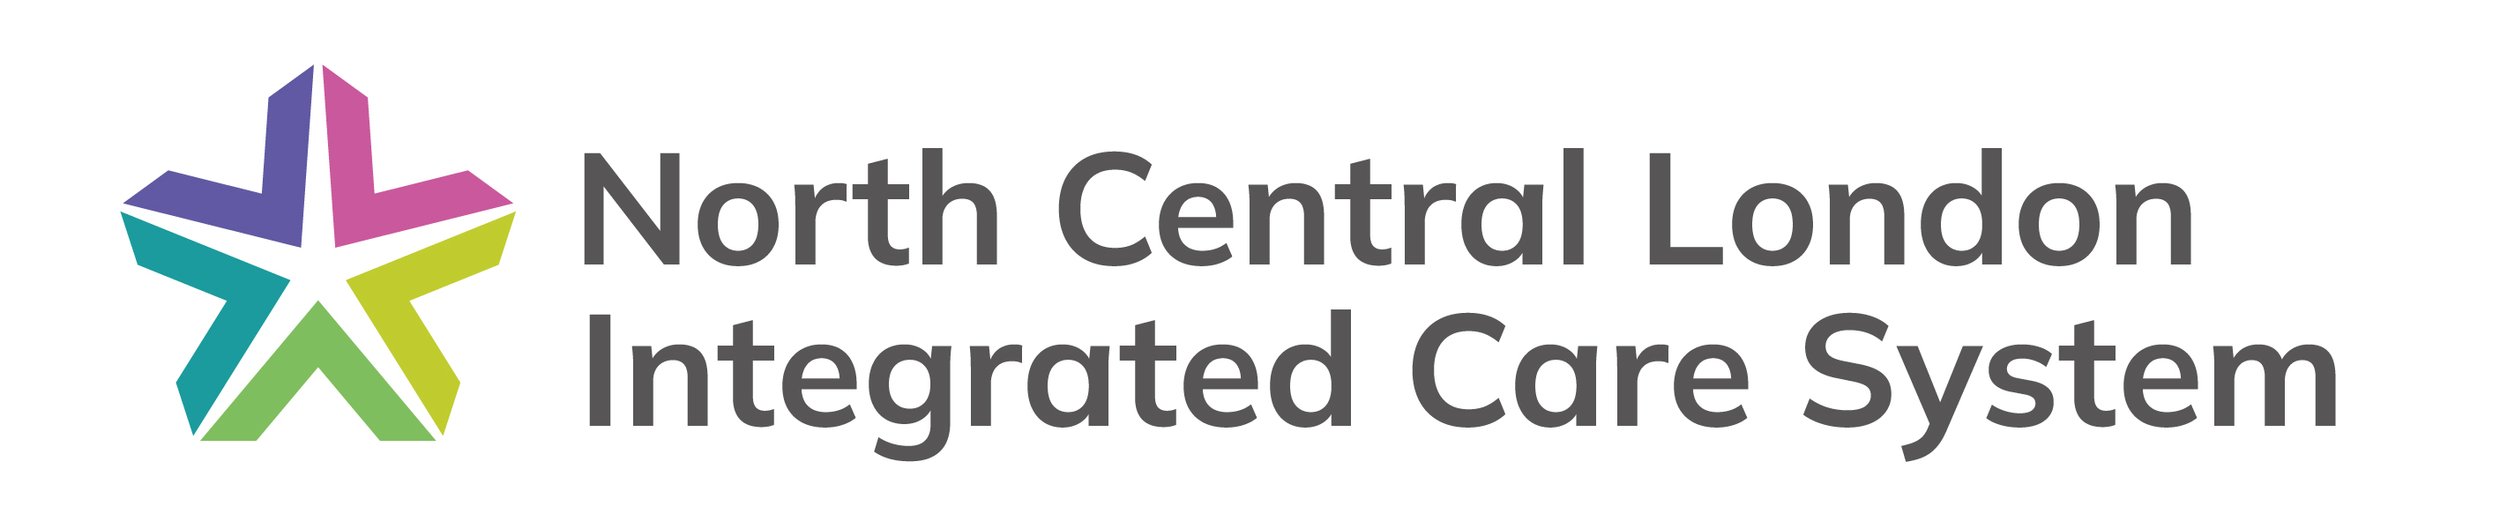 NCL-ICS-CMYK-Logo-Left-Aligned300.jpg